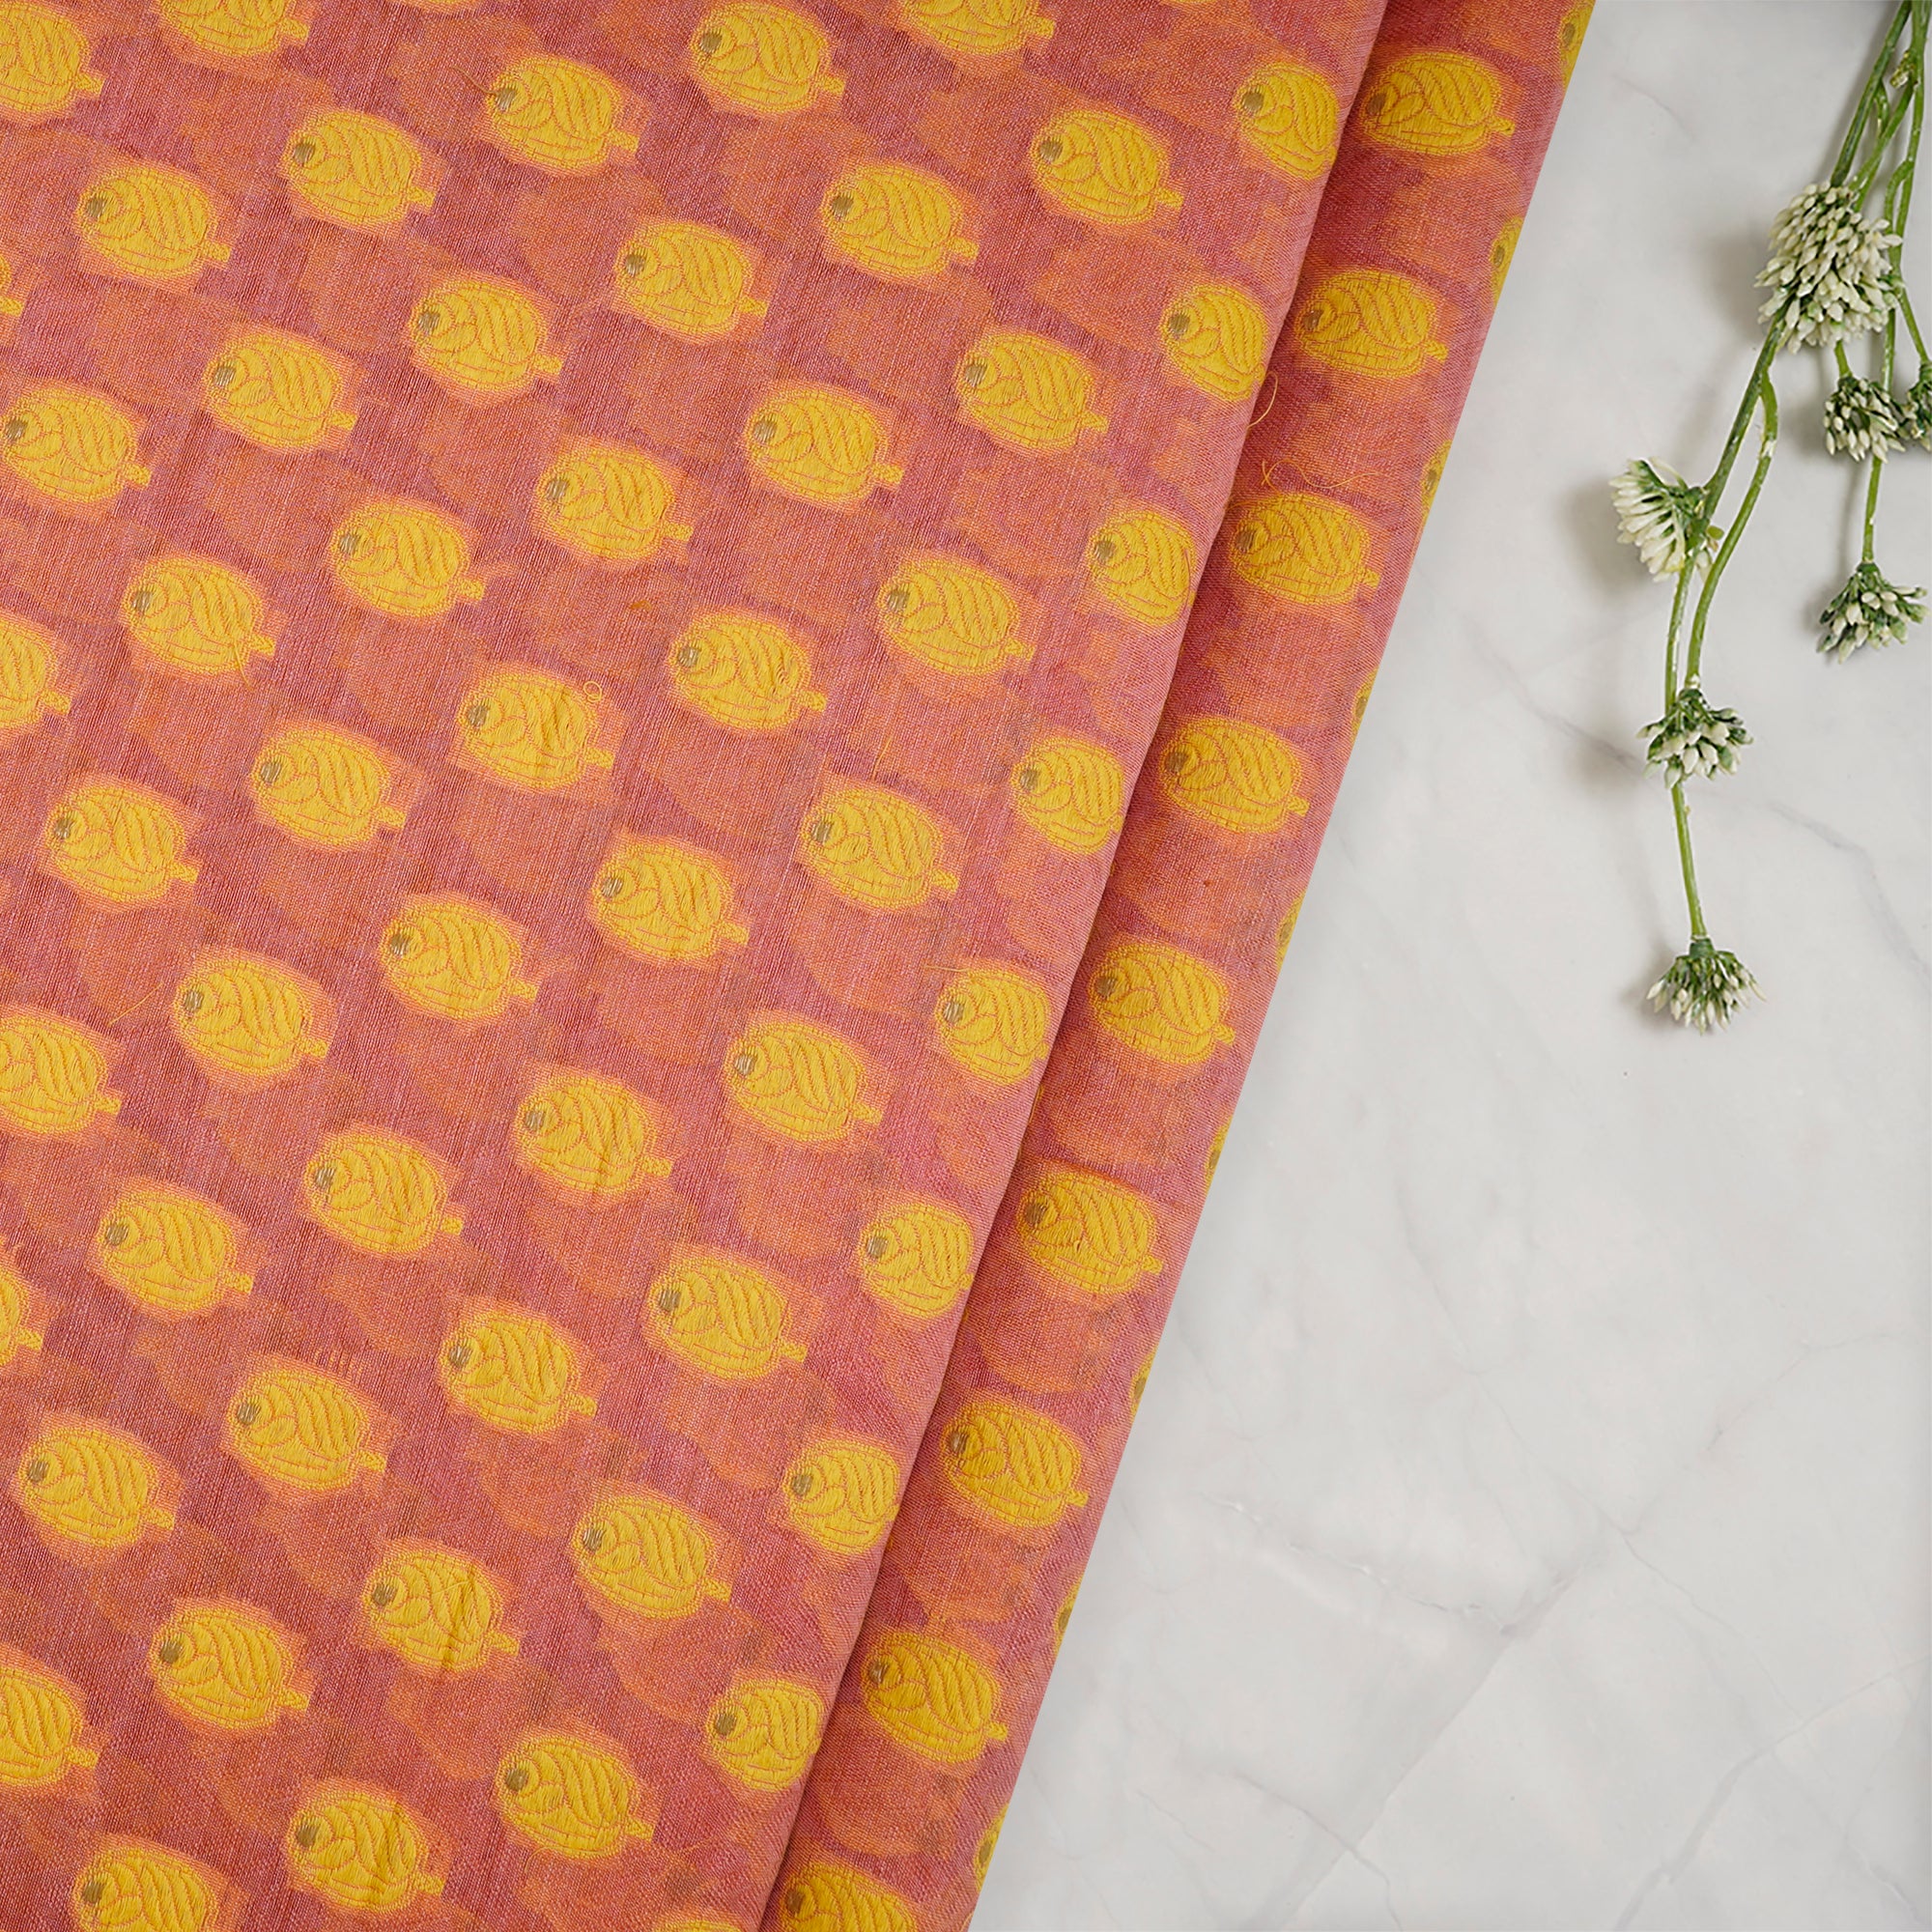 Peach-Yellow Booti Pattern Handwoven Meenakari Chanderi Brocade Fabric